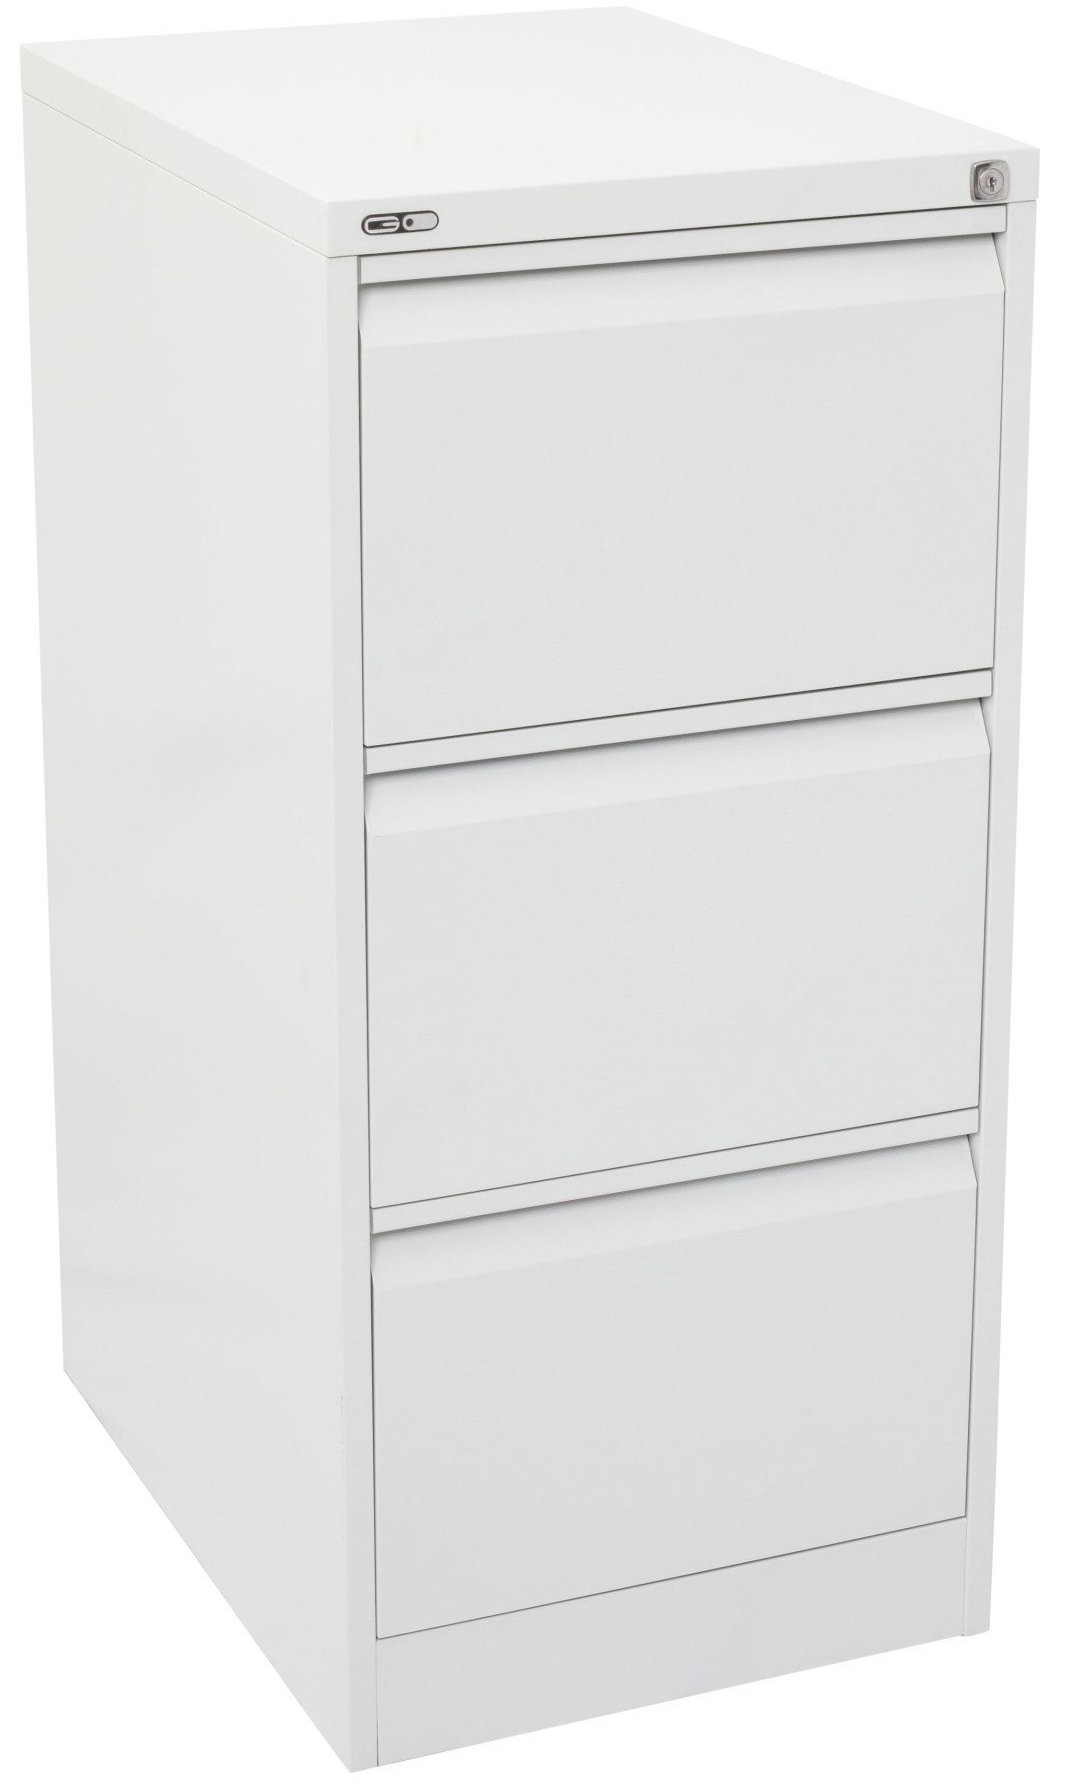 3 drawer metal filing cabinet white